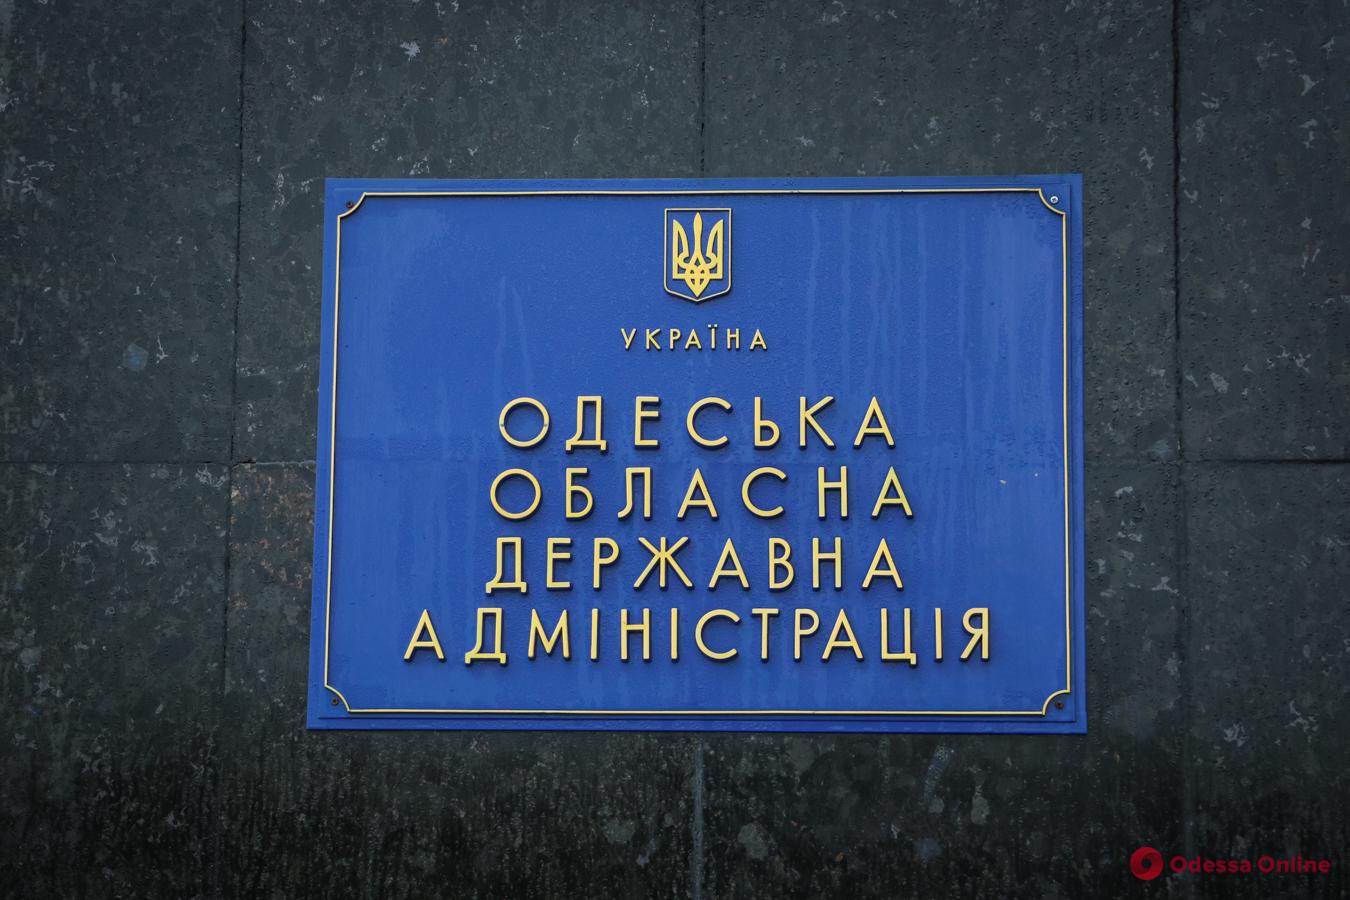 Депутаты Одесского облсовета проголосовали за выделение 19 миллионов гривен на территориальную оборону